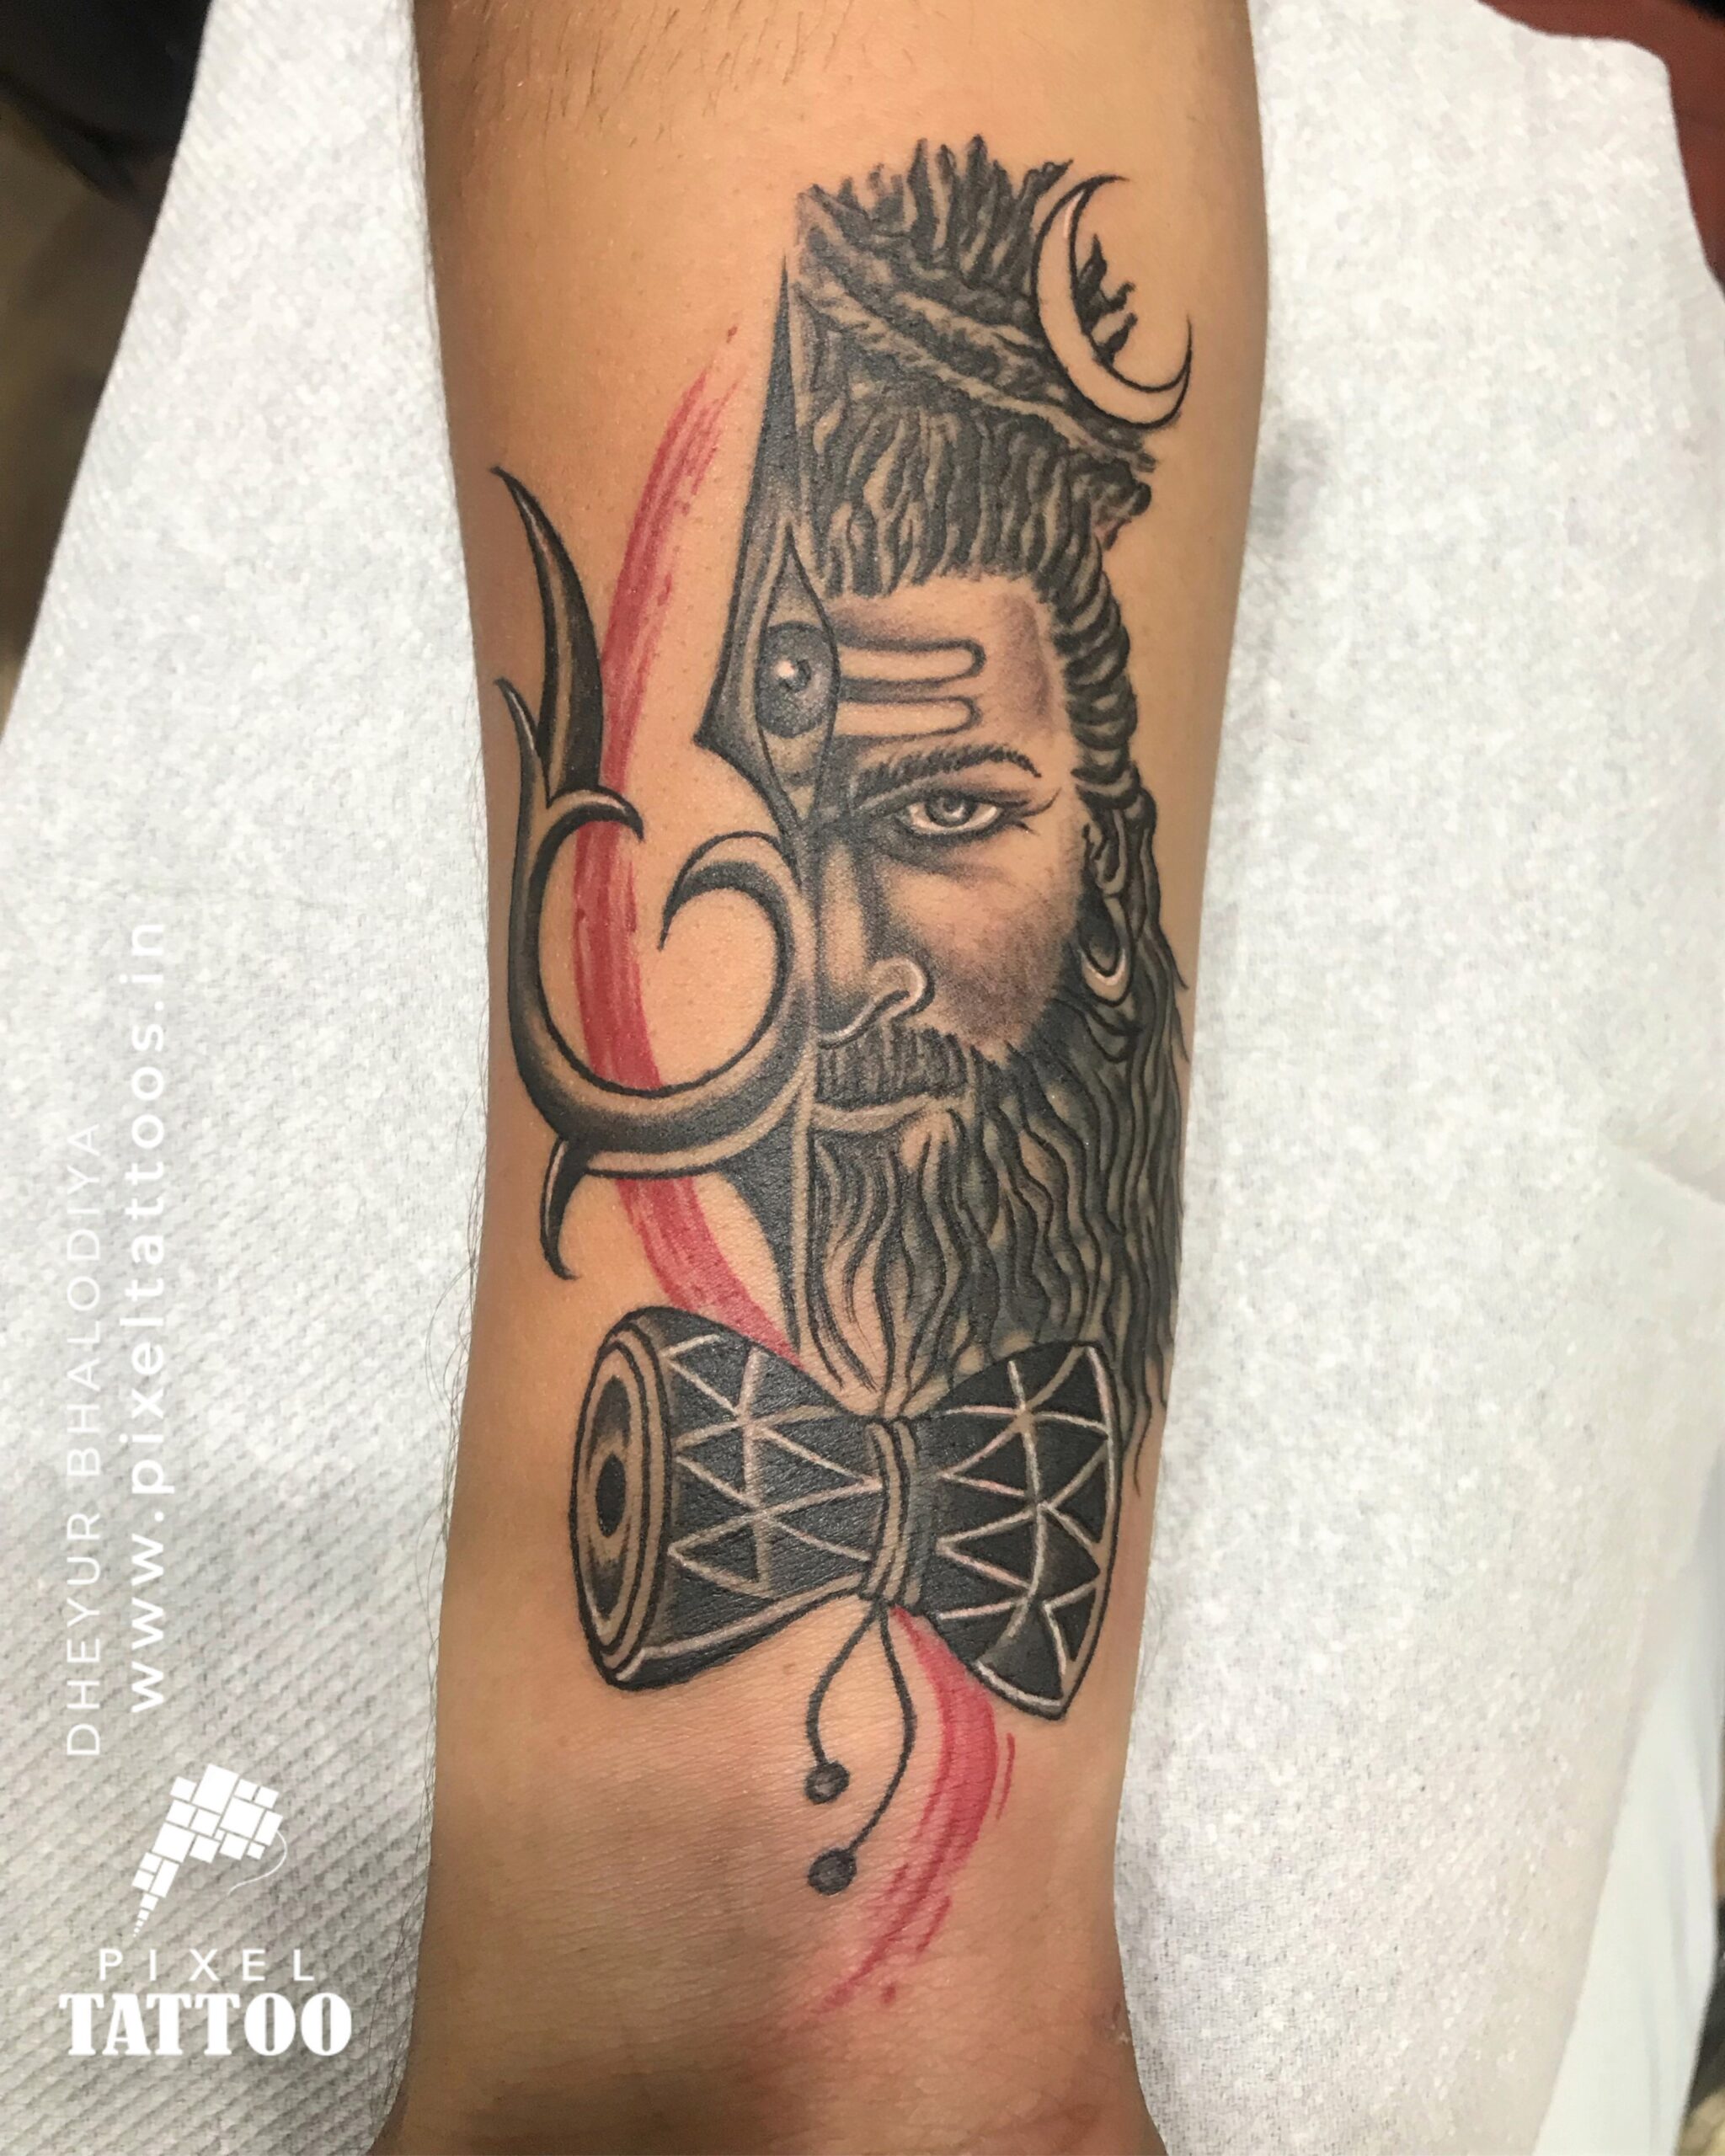 Mahadev tattoo | Hand tattoos, Tattoos, Tattoo designs